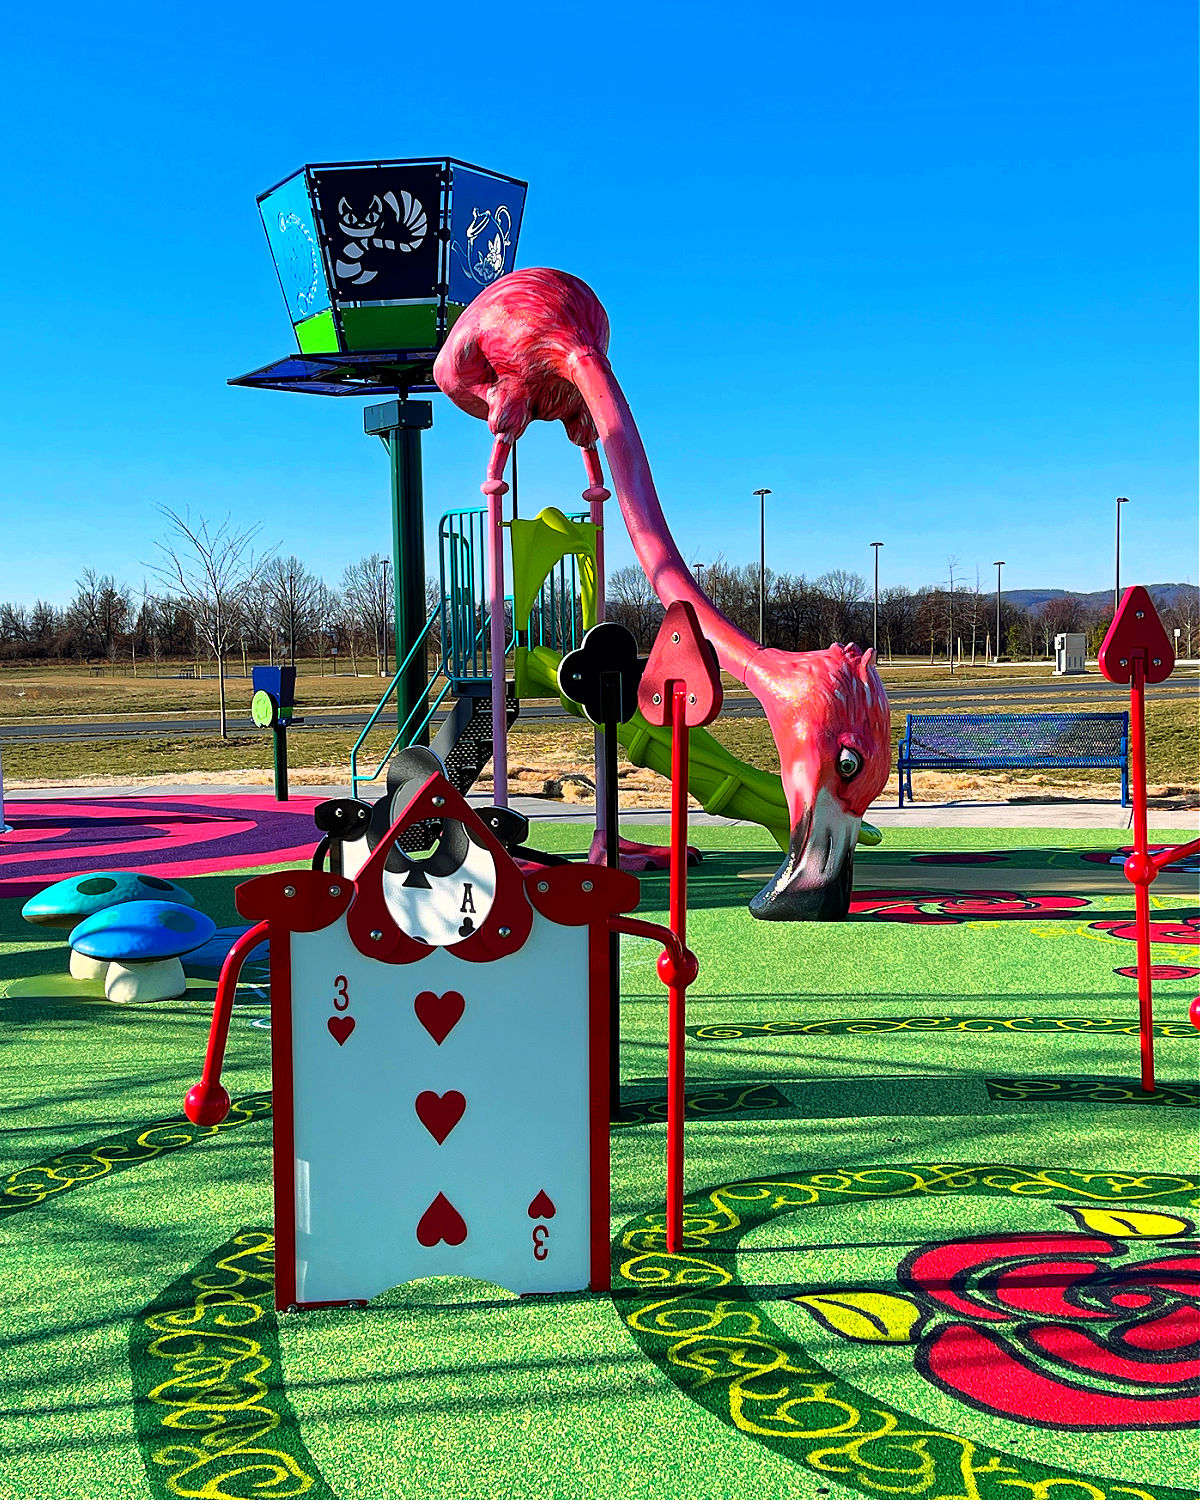 sophie and madigan's playground